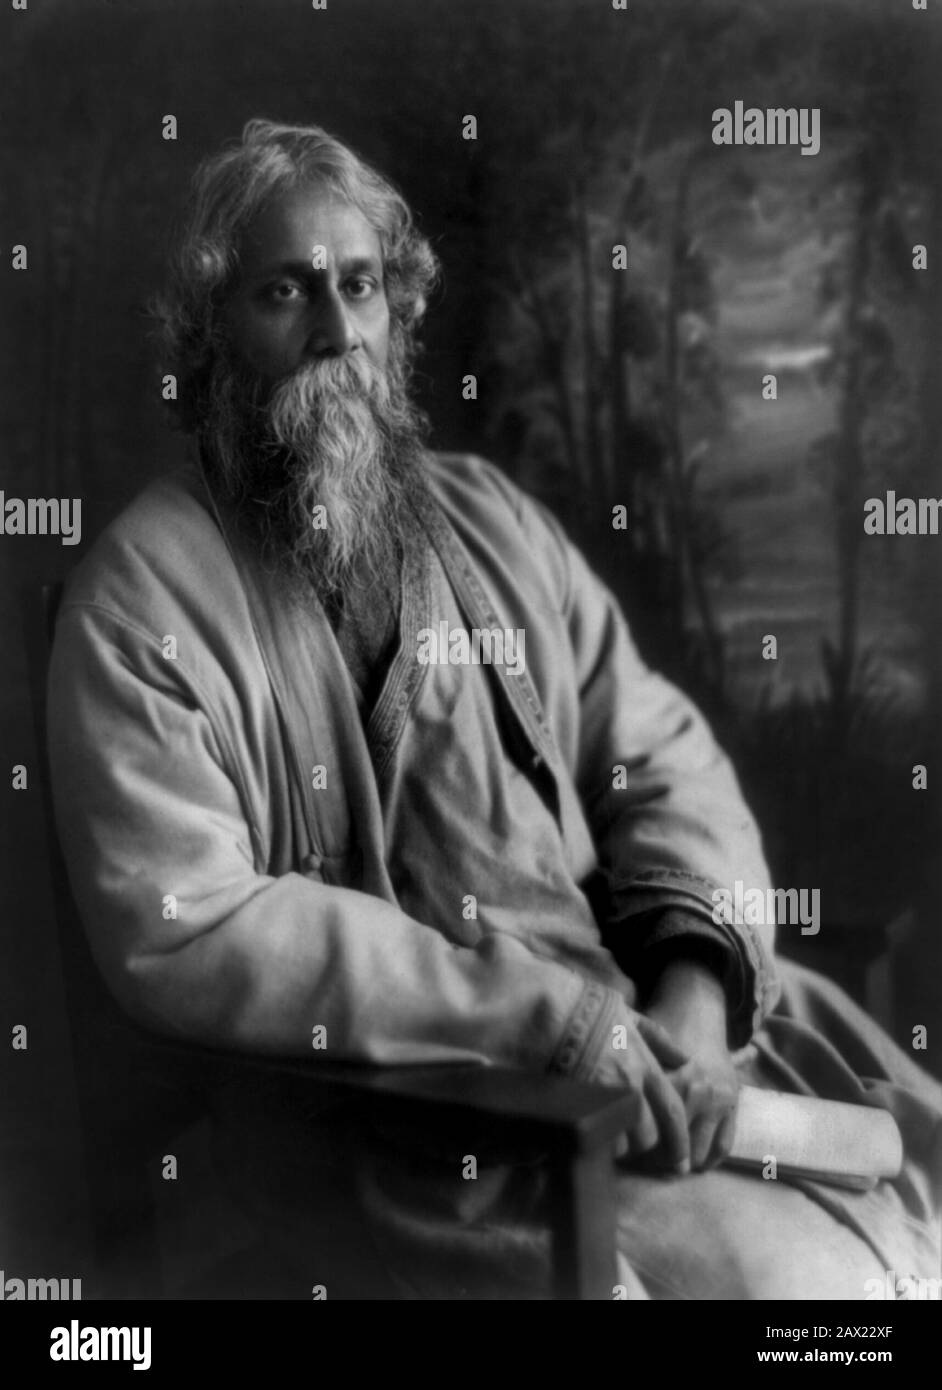 1917 : The celebrated indian poet and writer Rabindranath TAGORE ( Calcutta 1861 - 1941 ) , awarded with Nobel for Literature in 1913   - LETTERATO - SCRITTORE - LETTERATURA - Literature  - POESIA - POETRY - POET - POETA - portrait - ritratto  - PREMIO NOBEL LETTERATURA  ancient older man - uomo anziano vecchio - bear - barba ----  Archivio GBB Stock Photo